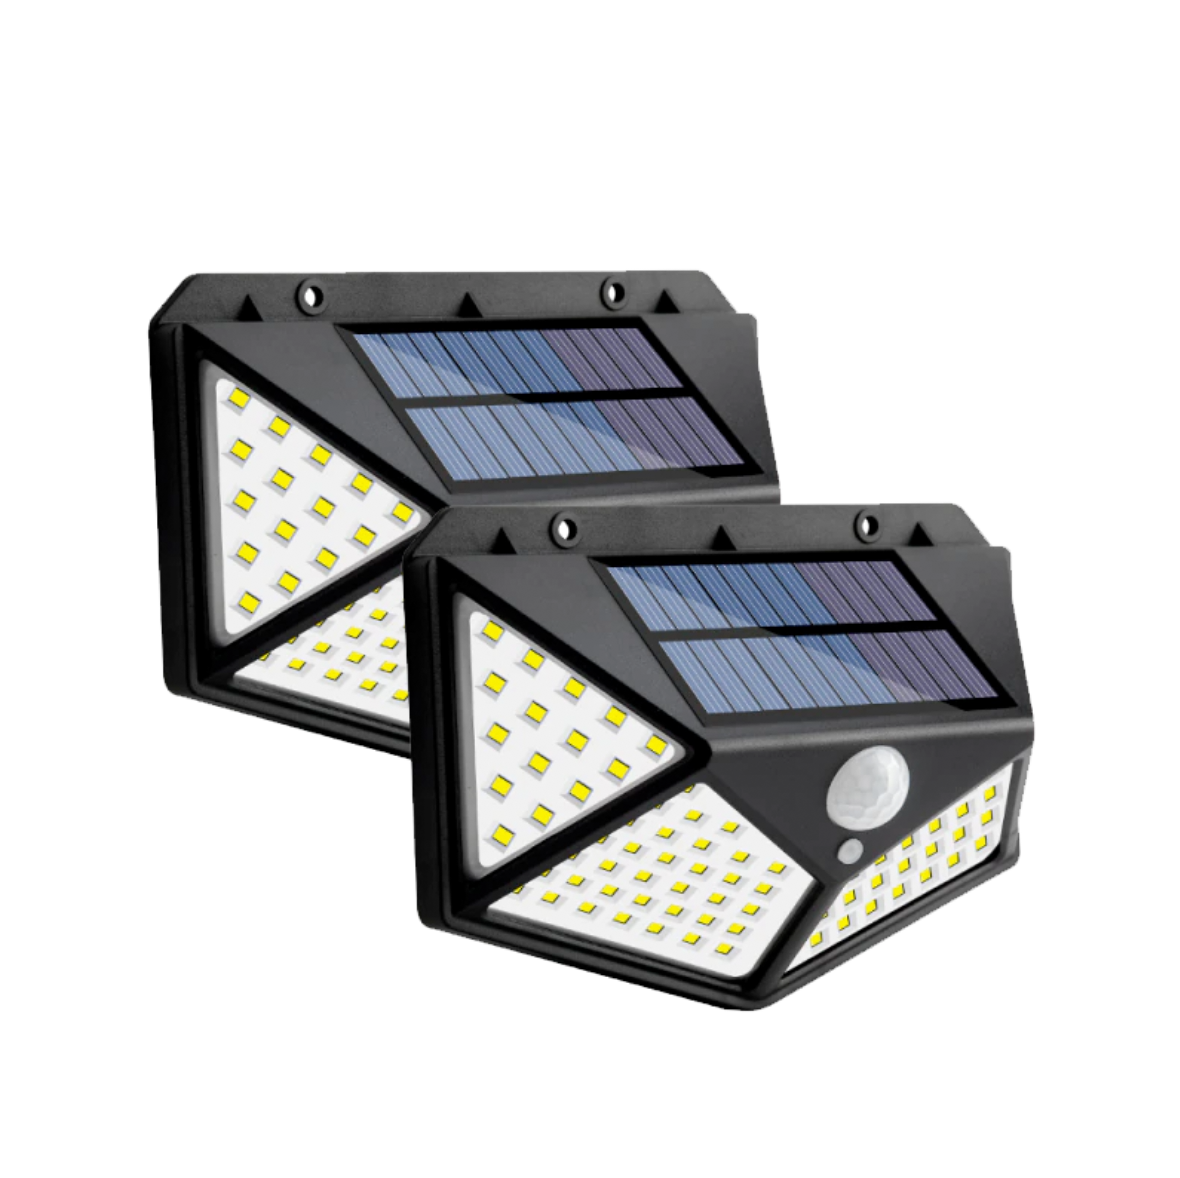 Refletor Solar SmartLed - Sua casa perfeitamente iluminada! (Oferta)